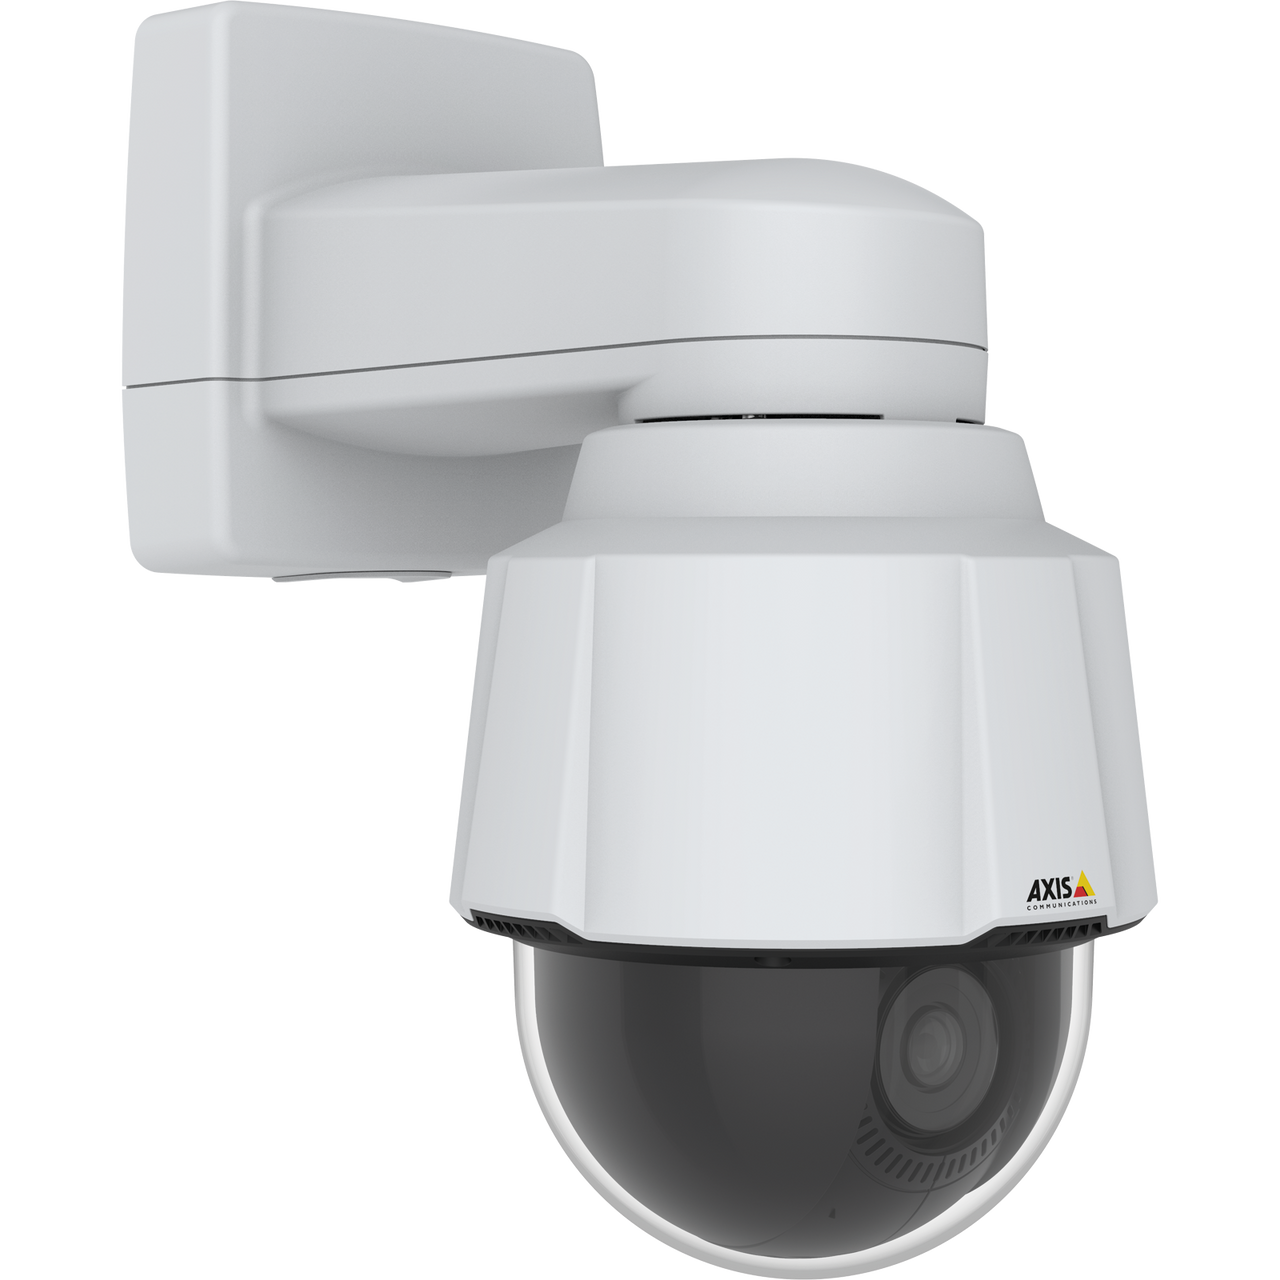 AXIS P5655-E 60HZ Cost-effective PTZ for versatile surveillance